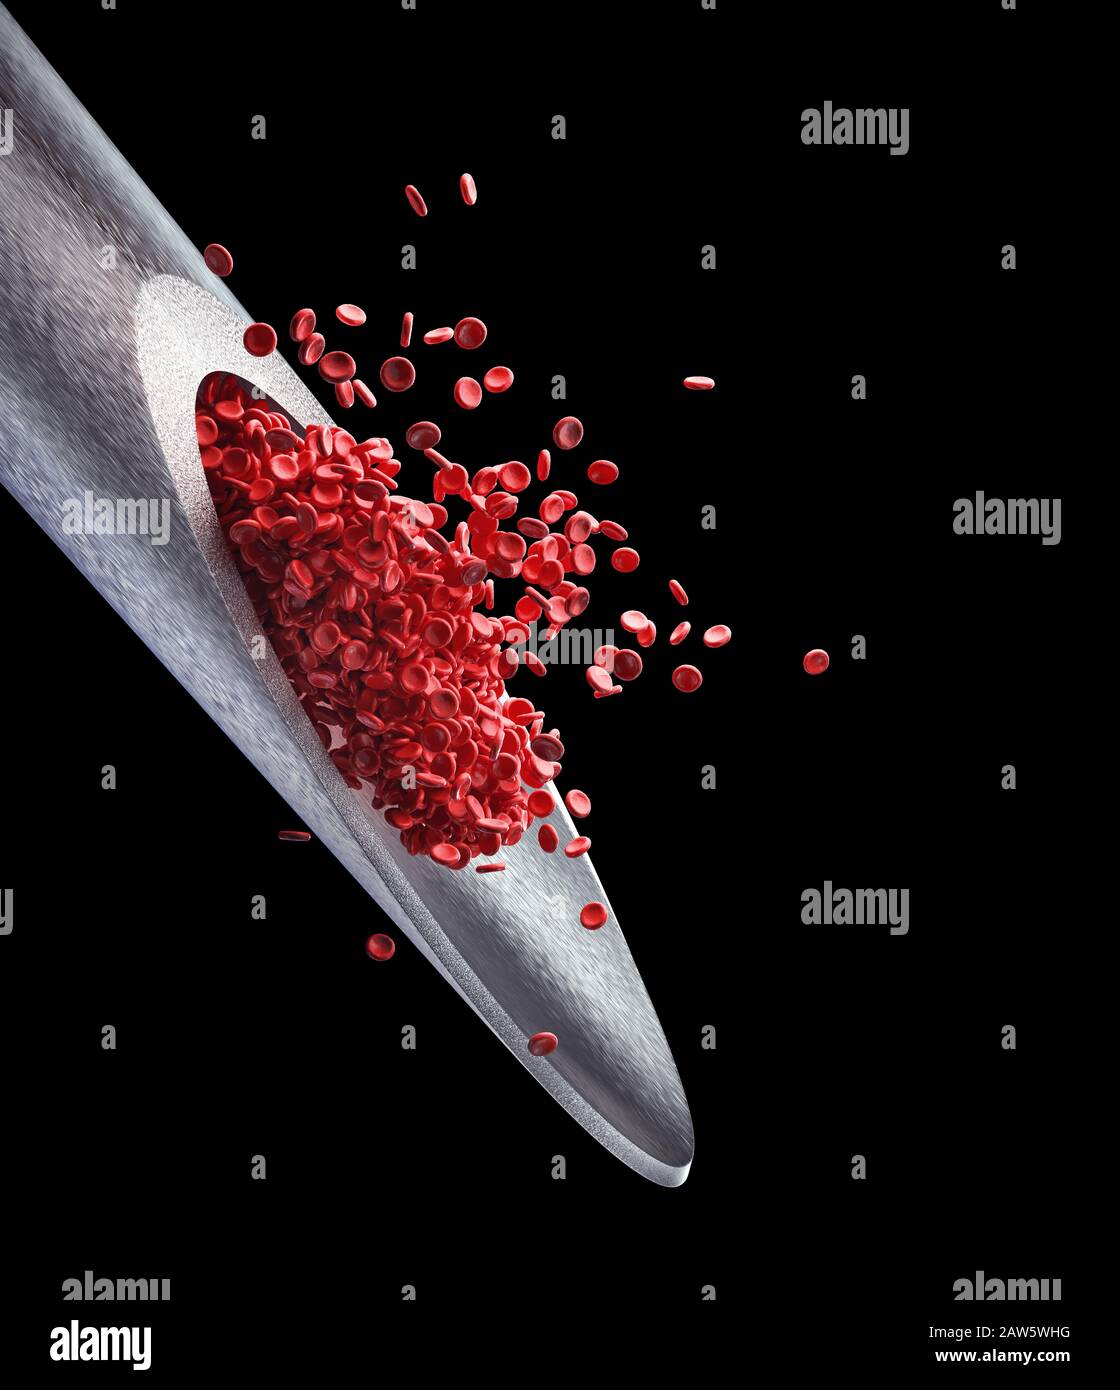 Aiguille d'injection avec globules rouges dépassant de la pointe. Illustration tridimensionnelle, image conceptuelle de la médecine et des études scientifiques. Le chemin d'écrêtage inclut Banque D'Images